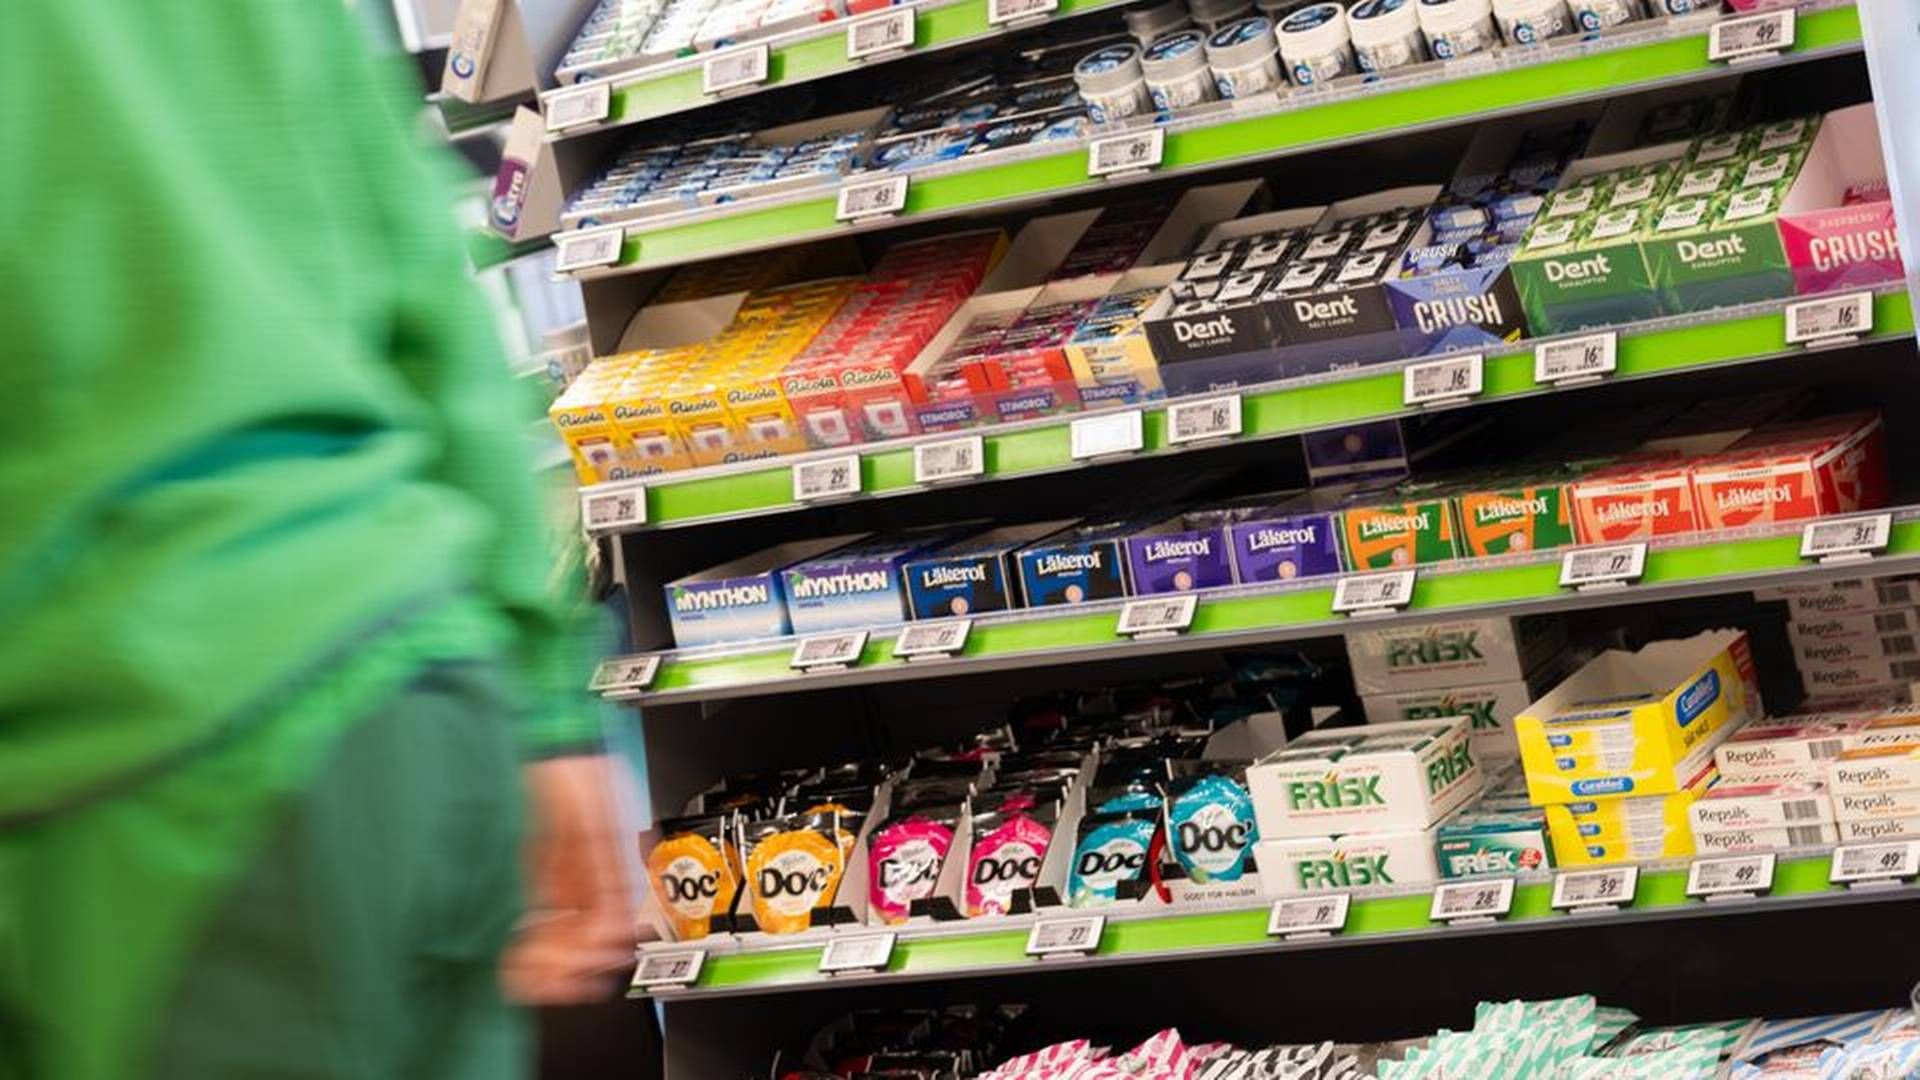 SVARER: Nå svarer konkurrentene på Kiwis tiltak om sukkerfrie kasser. | Foto: Kiwi